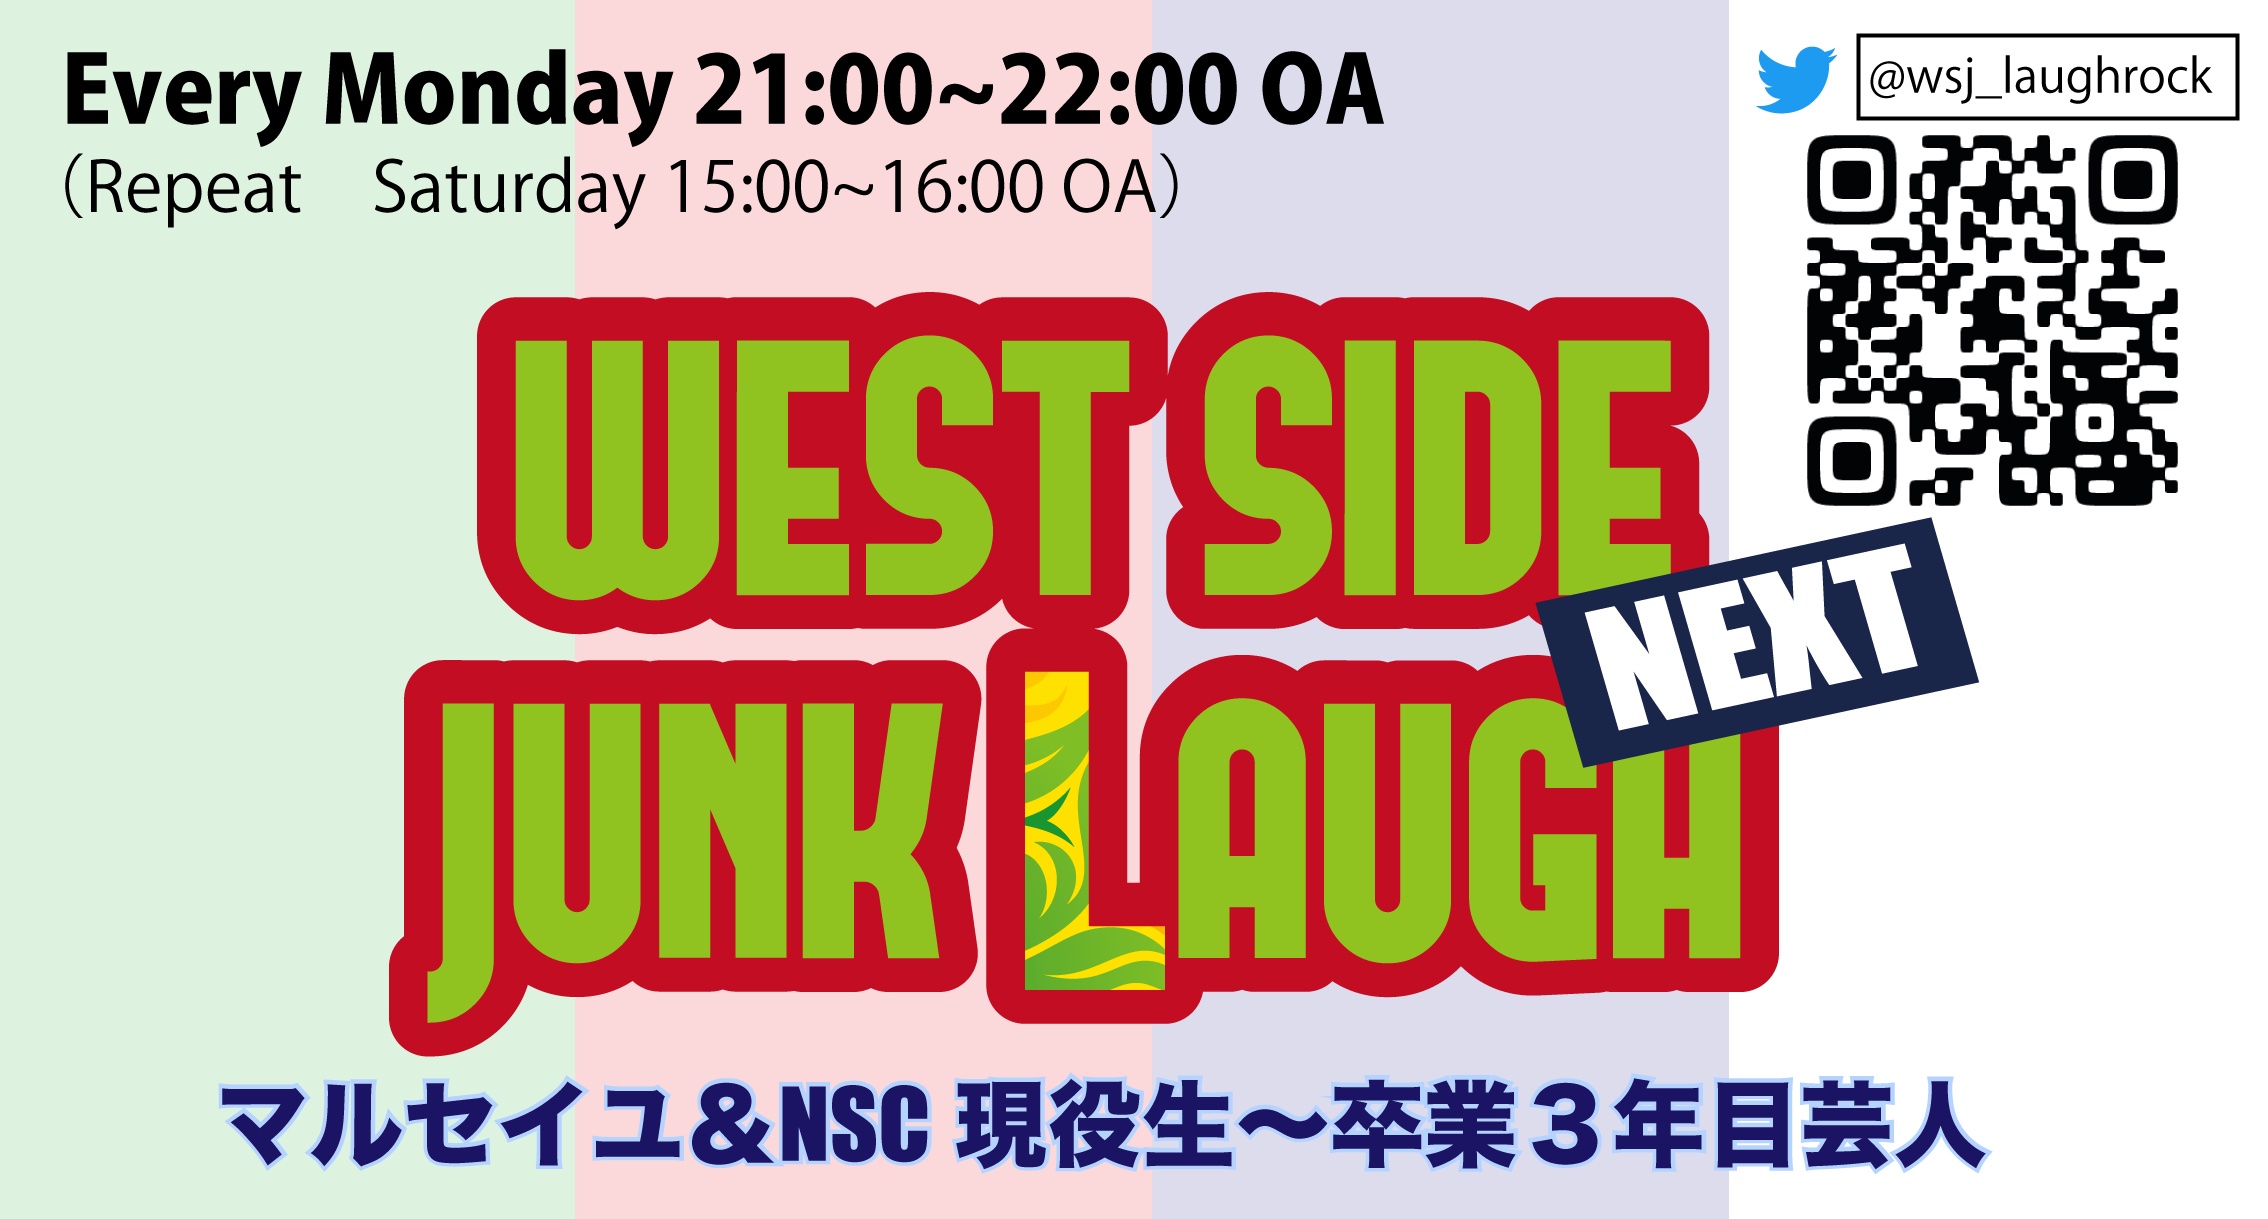 WEST SIDE JUNK LAUGH / WEST SIDE JUNK ROCK Laugh&Rock, Mon-Thu 21:00-22:00